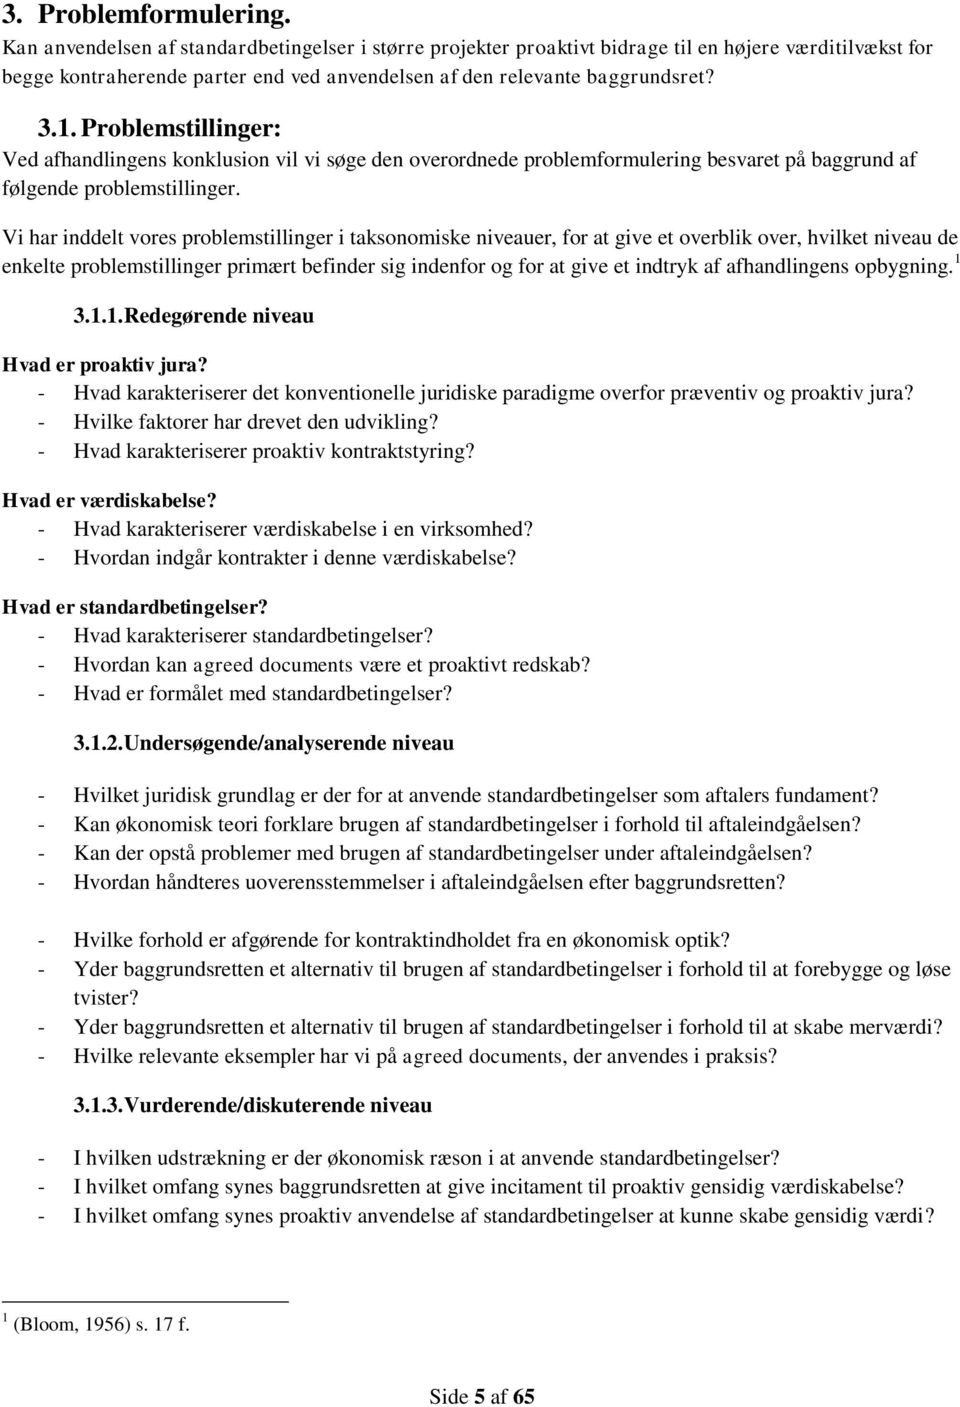 BACHELORAFHANDLING, AARHUS UNIVERSITET. Gensidig værdiskabelse i kontrakter  Proaktiv anvendelse af standardbetingelser i større projekter - PDF Free  Download